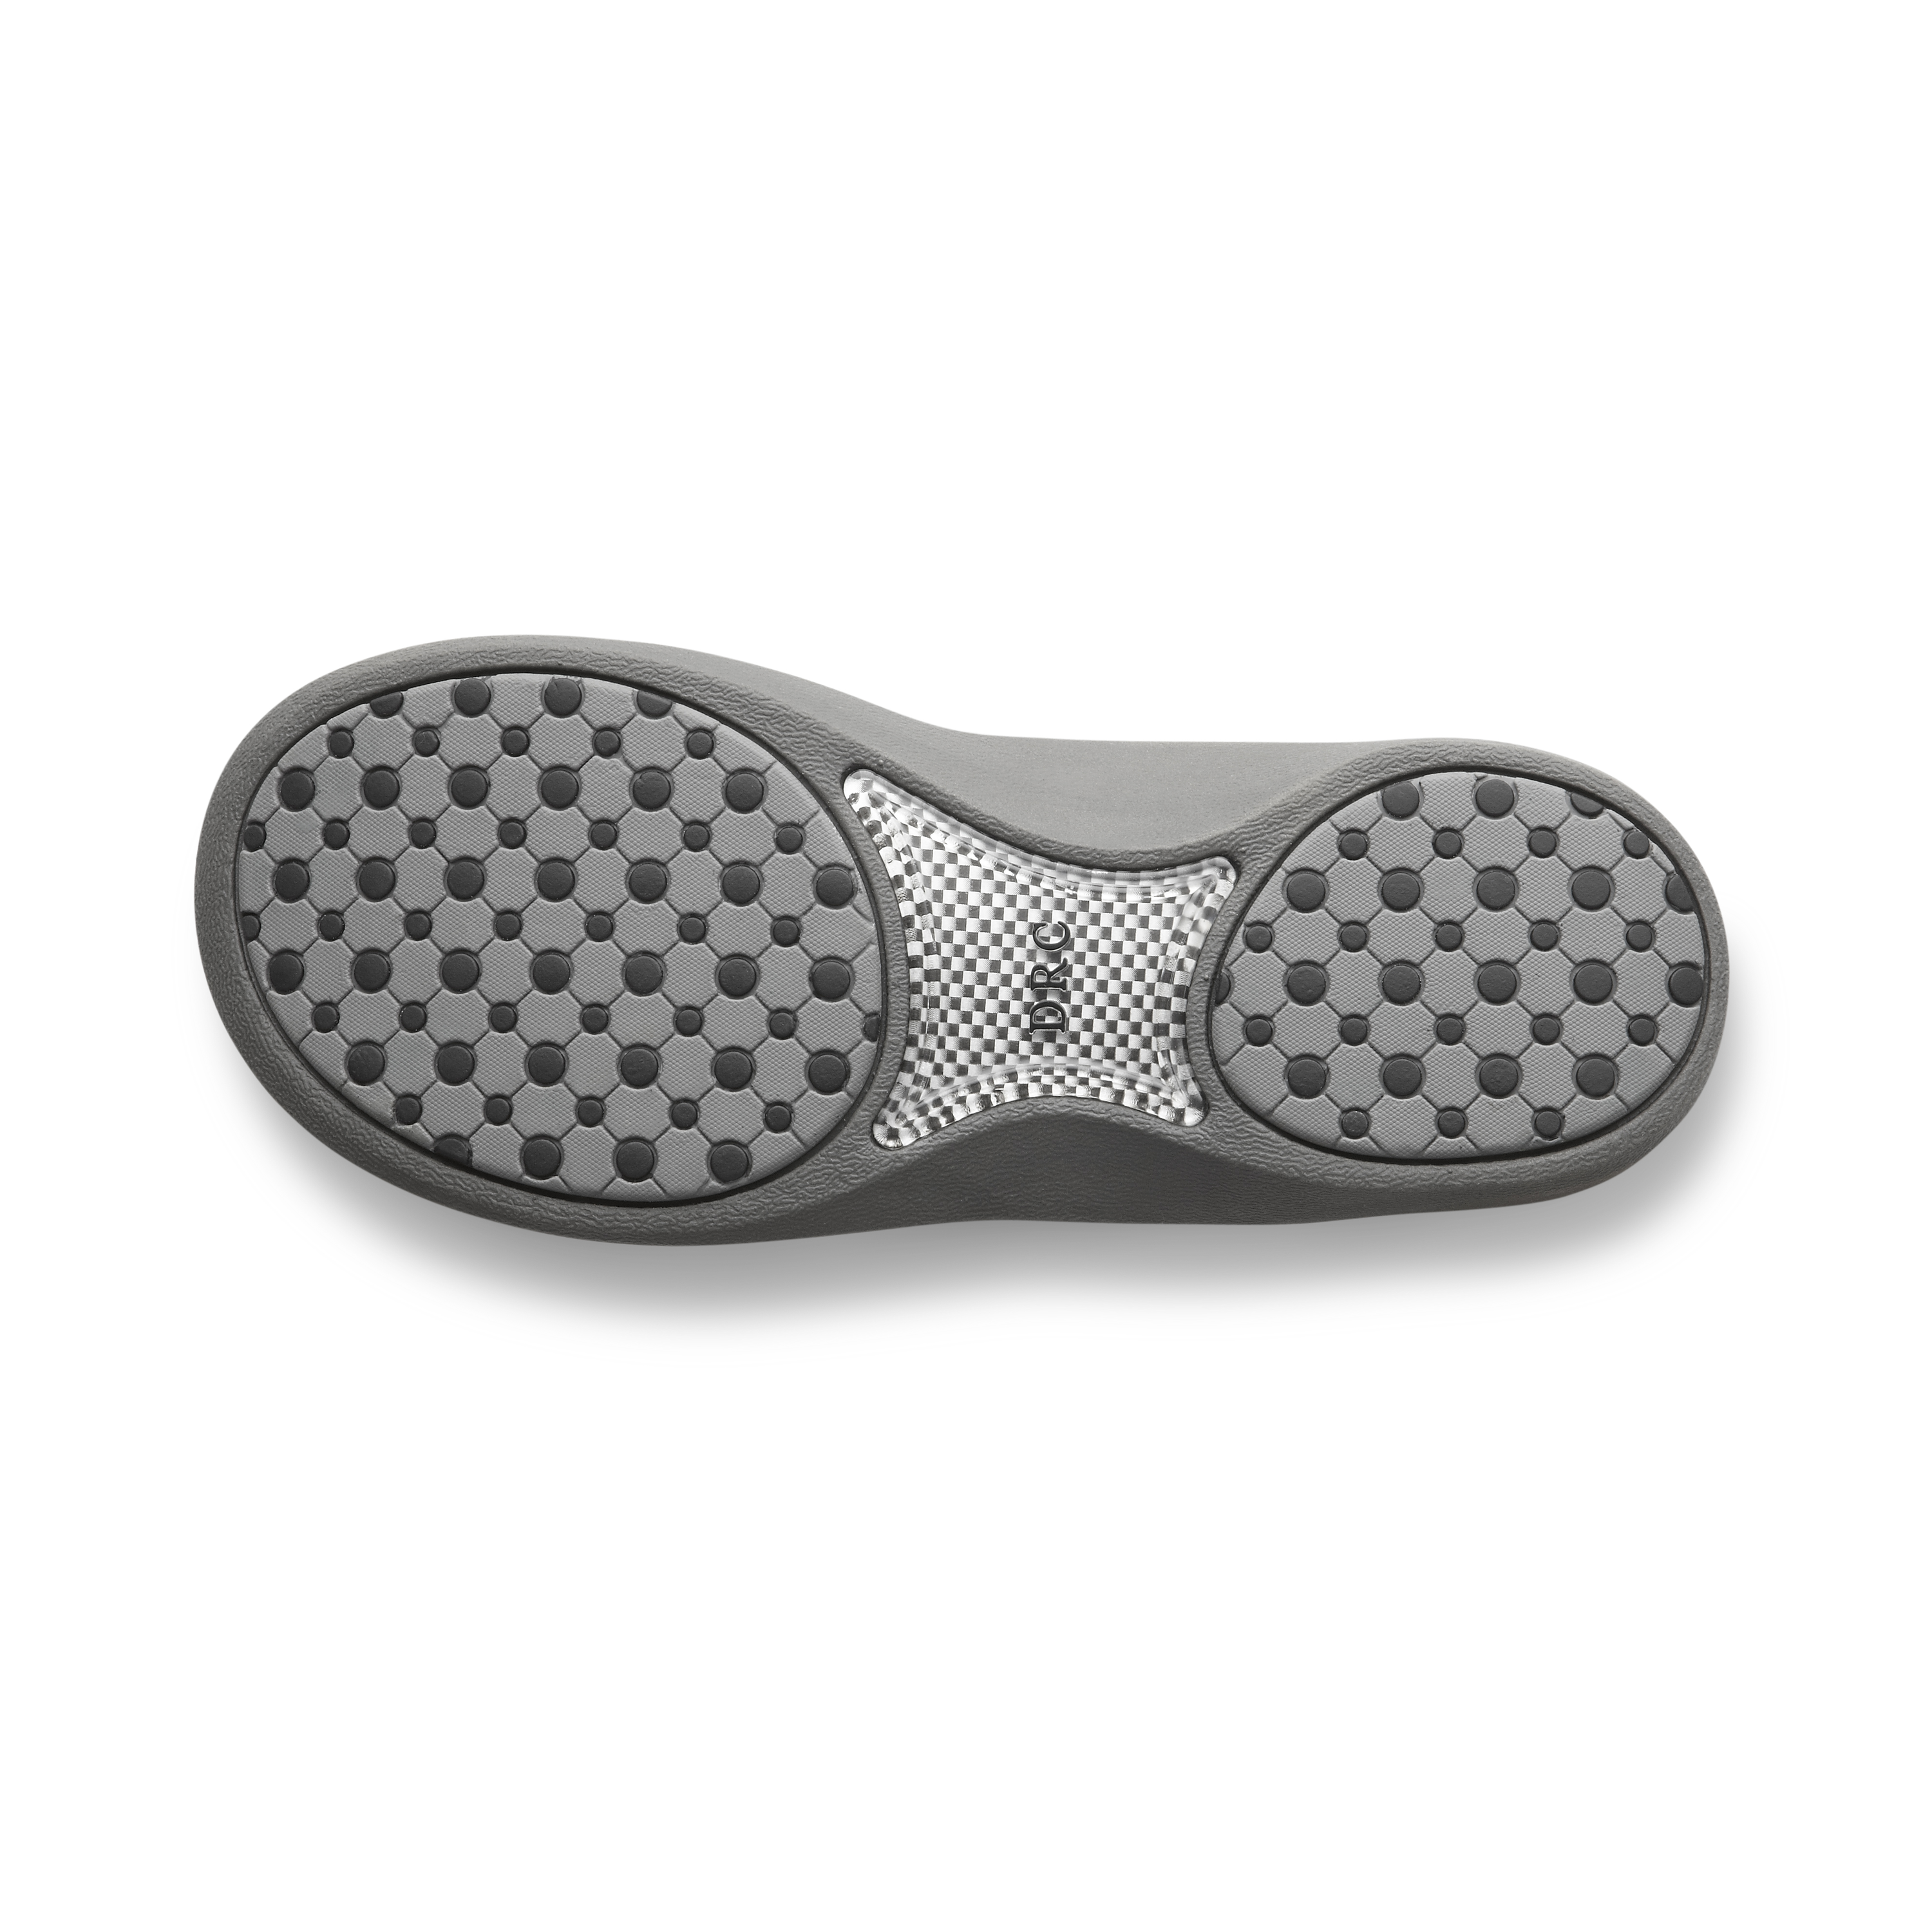 Zusatzbild DR. COMFORT® Collin schwarz, unten, Orthopädische Schuhe, Leichter Sommerschuh mit eingearbeitetem Fußbett für mehr Stabilität